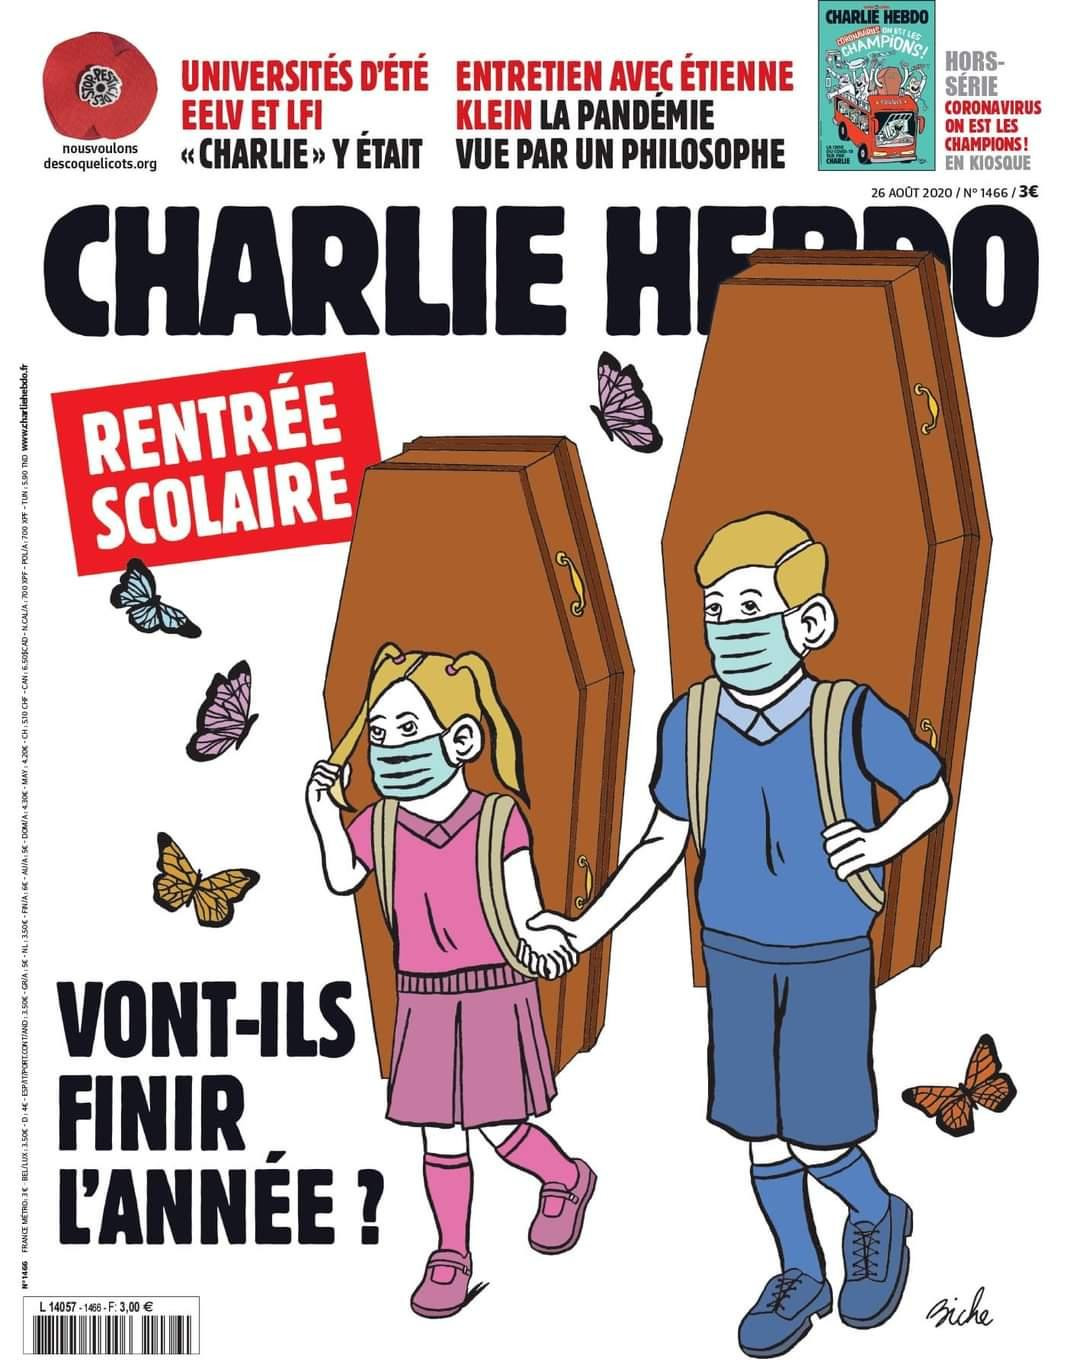 Portada de Charlie Hebdo sobre vuelta a clases en Francia, coronavirus, pandemia